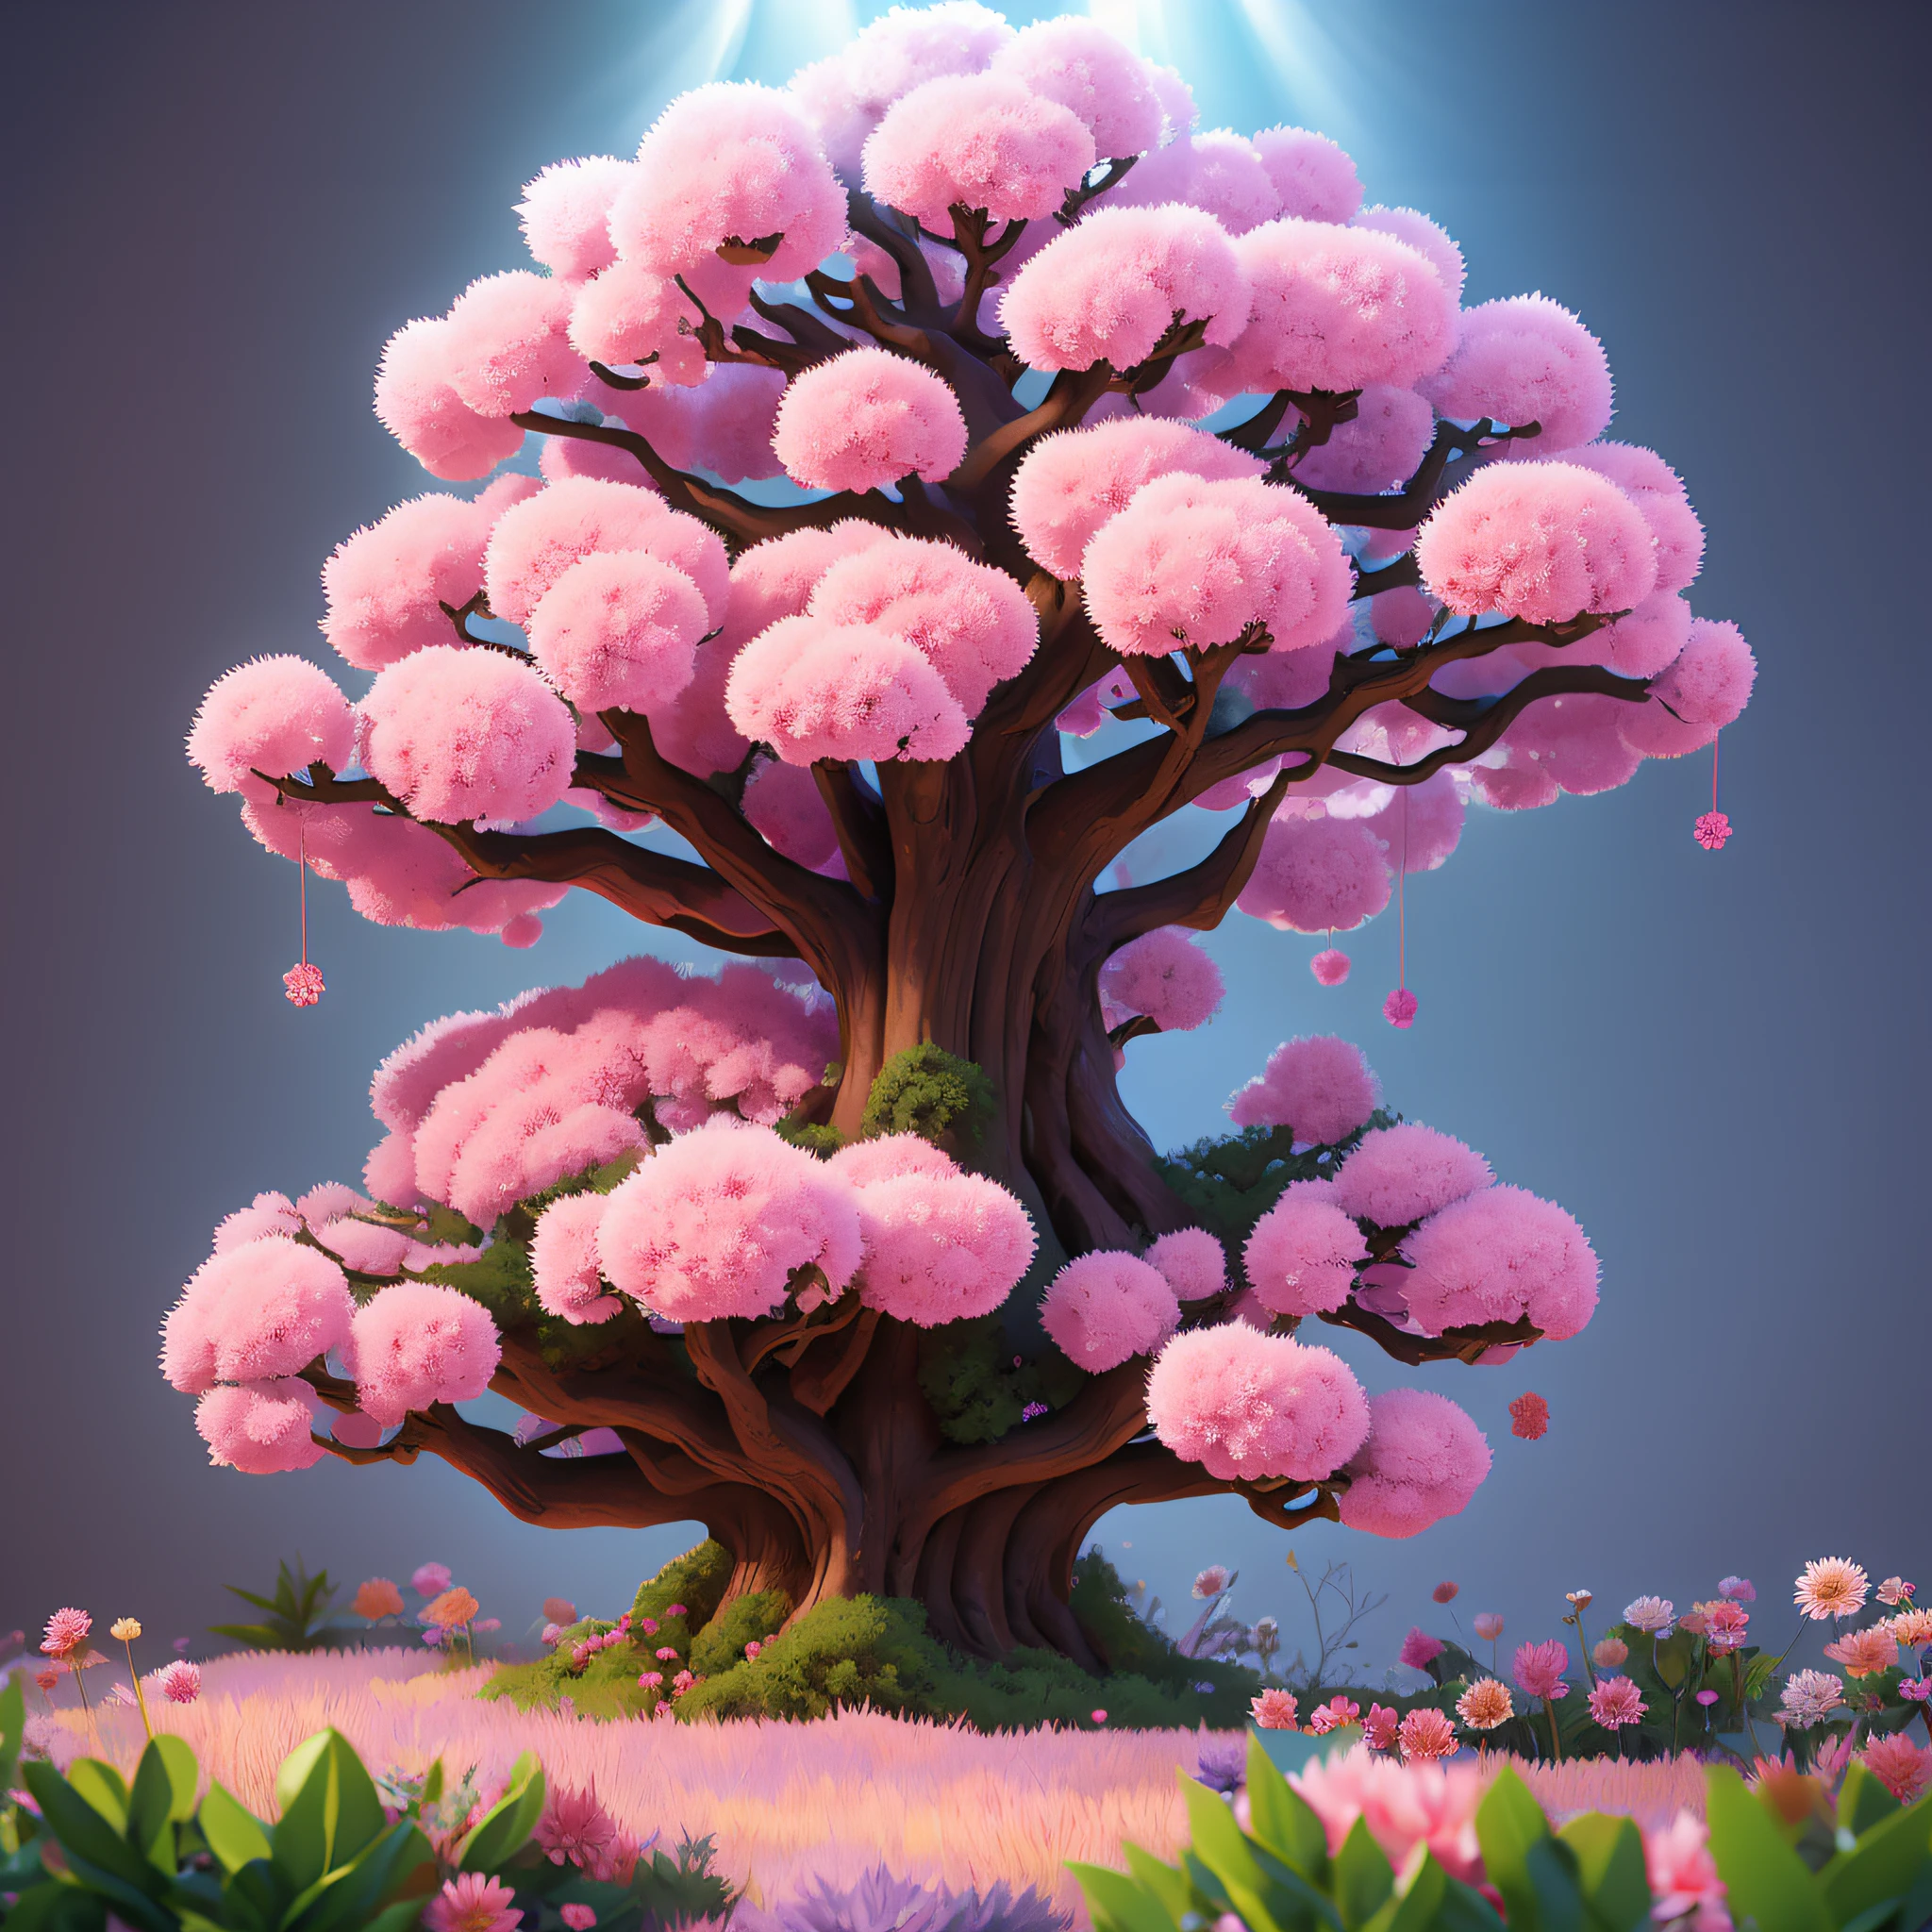 Grandes pechos florecientes de color rosa y morado, hermosos árboles